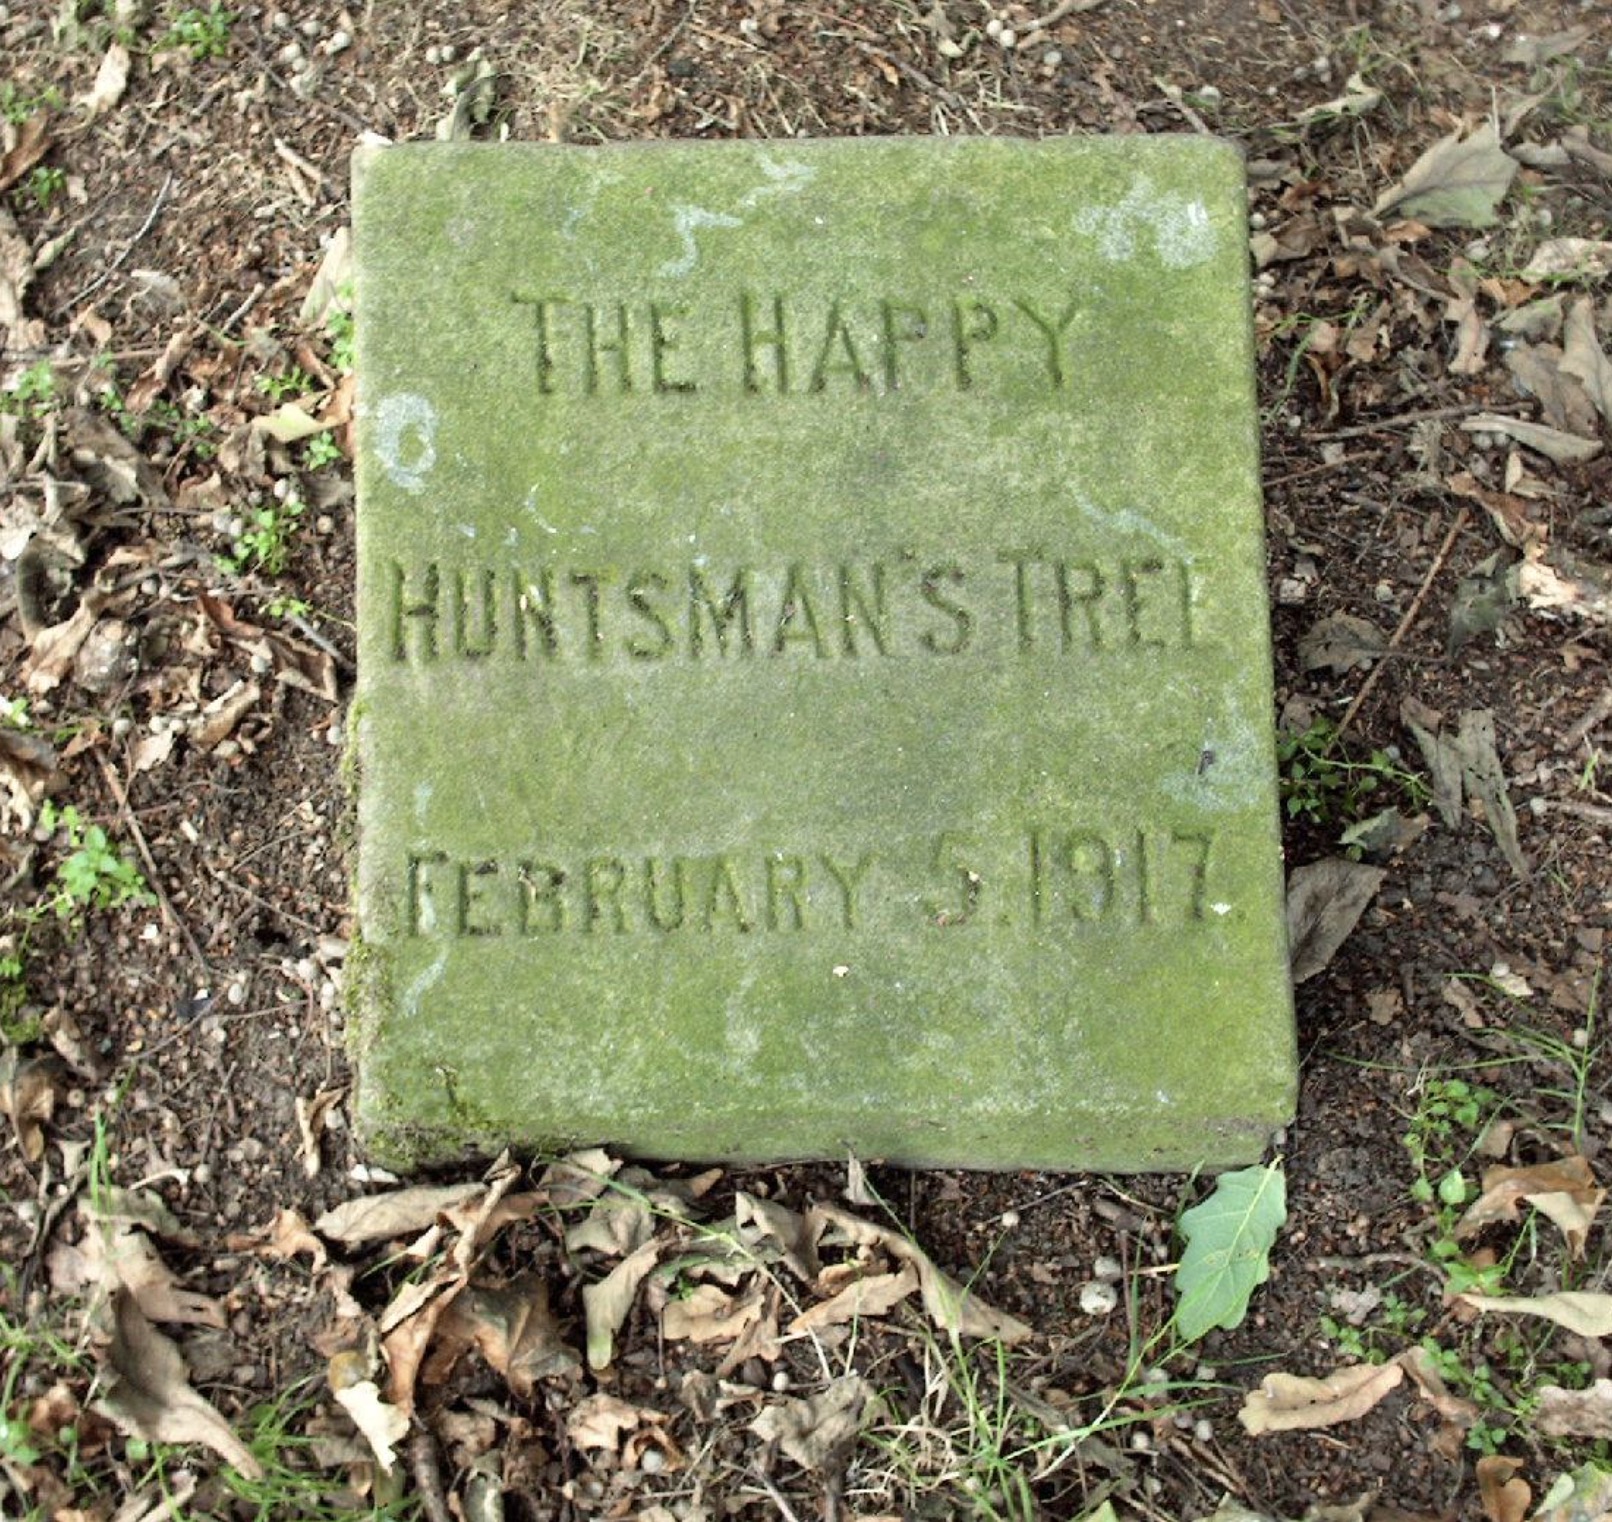 The Happy Huntsman's Tree, 1917